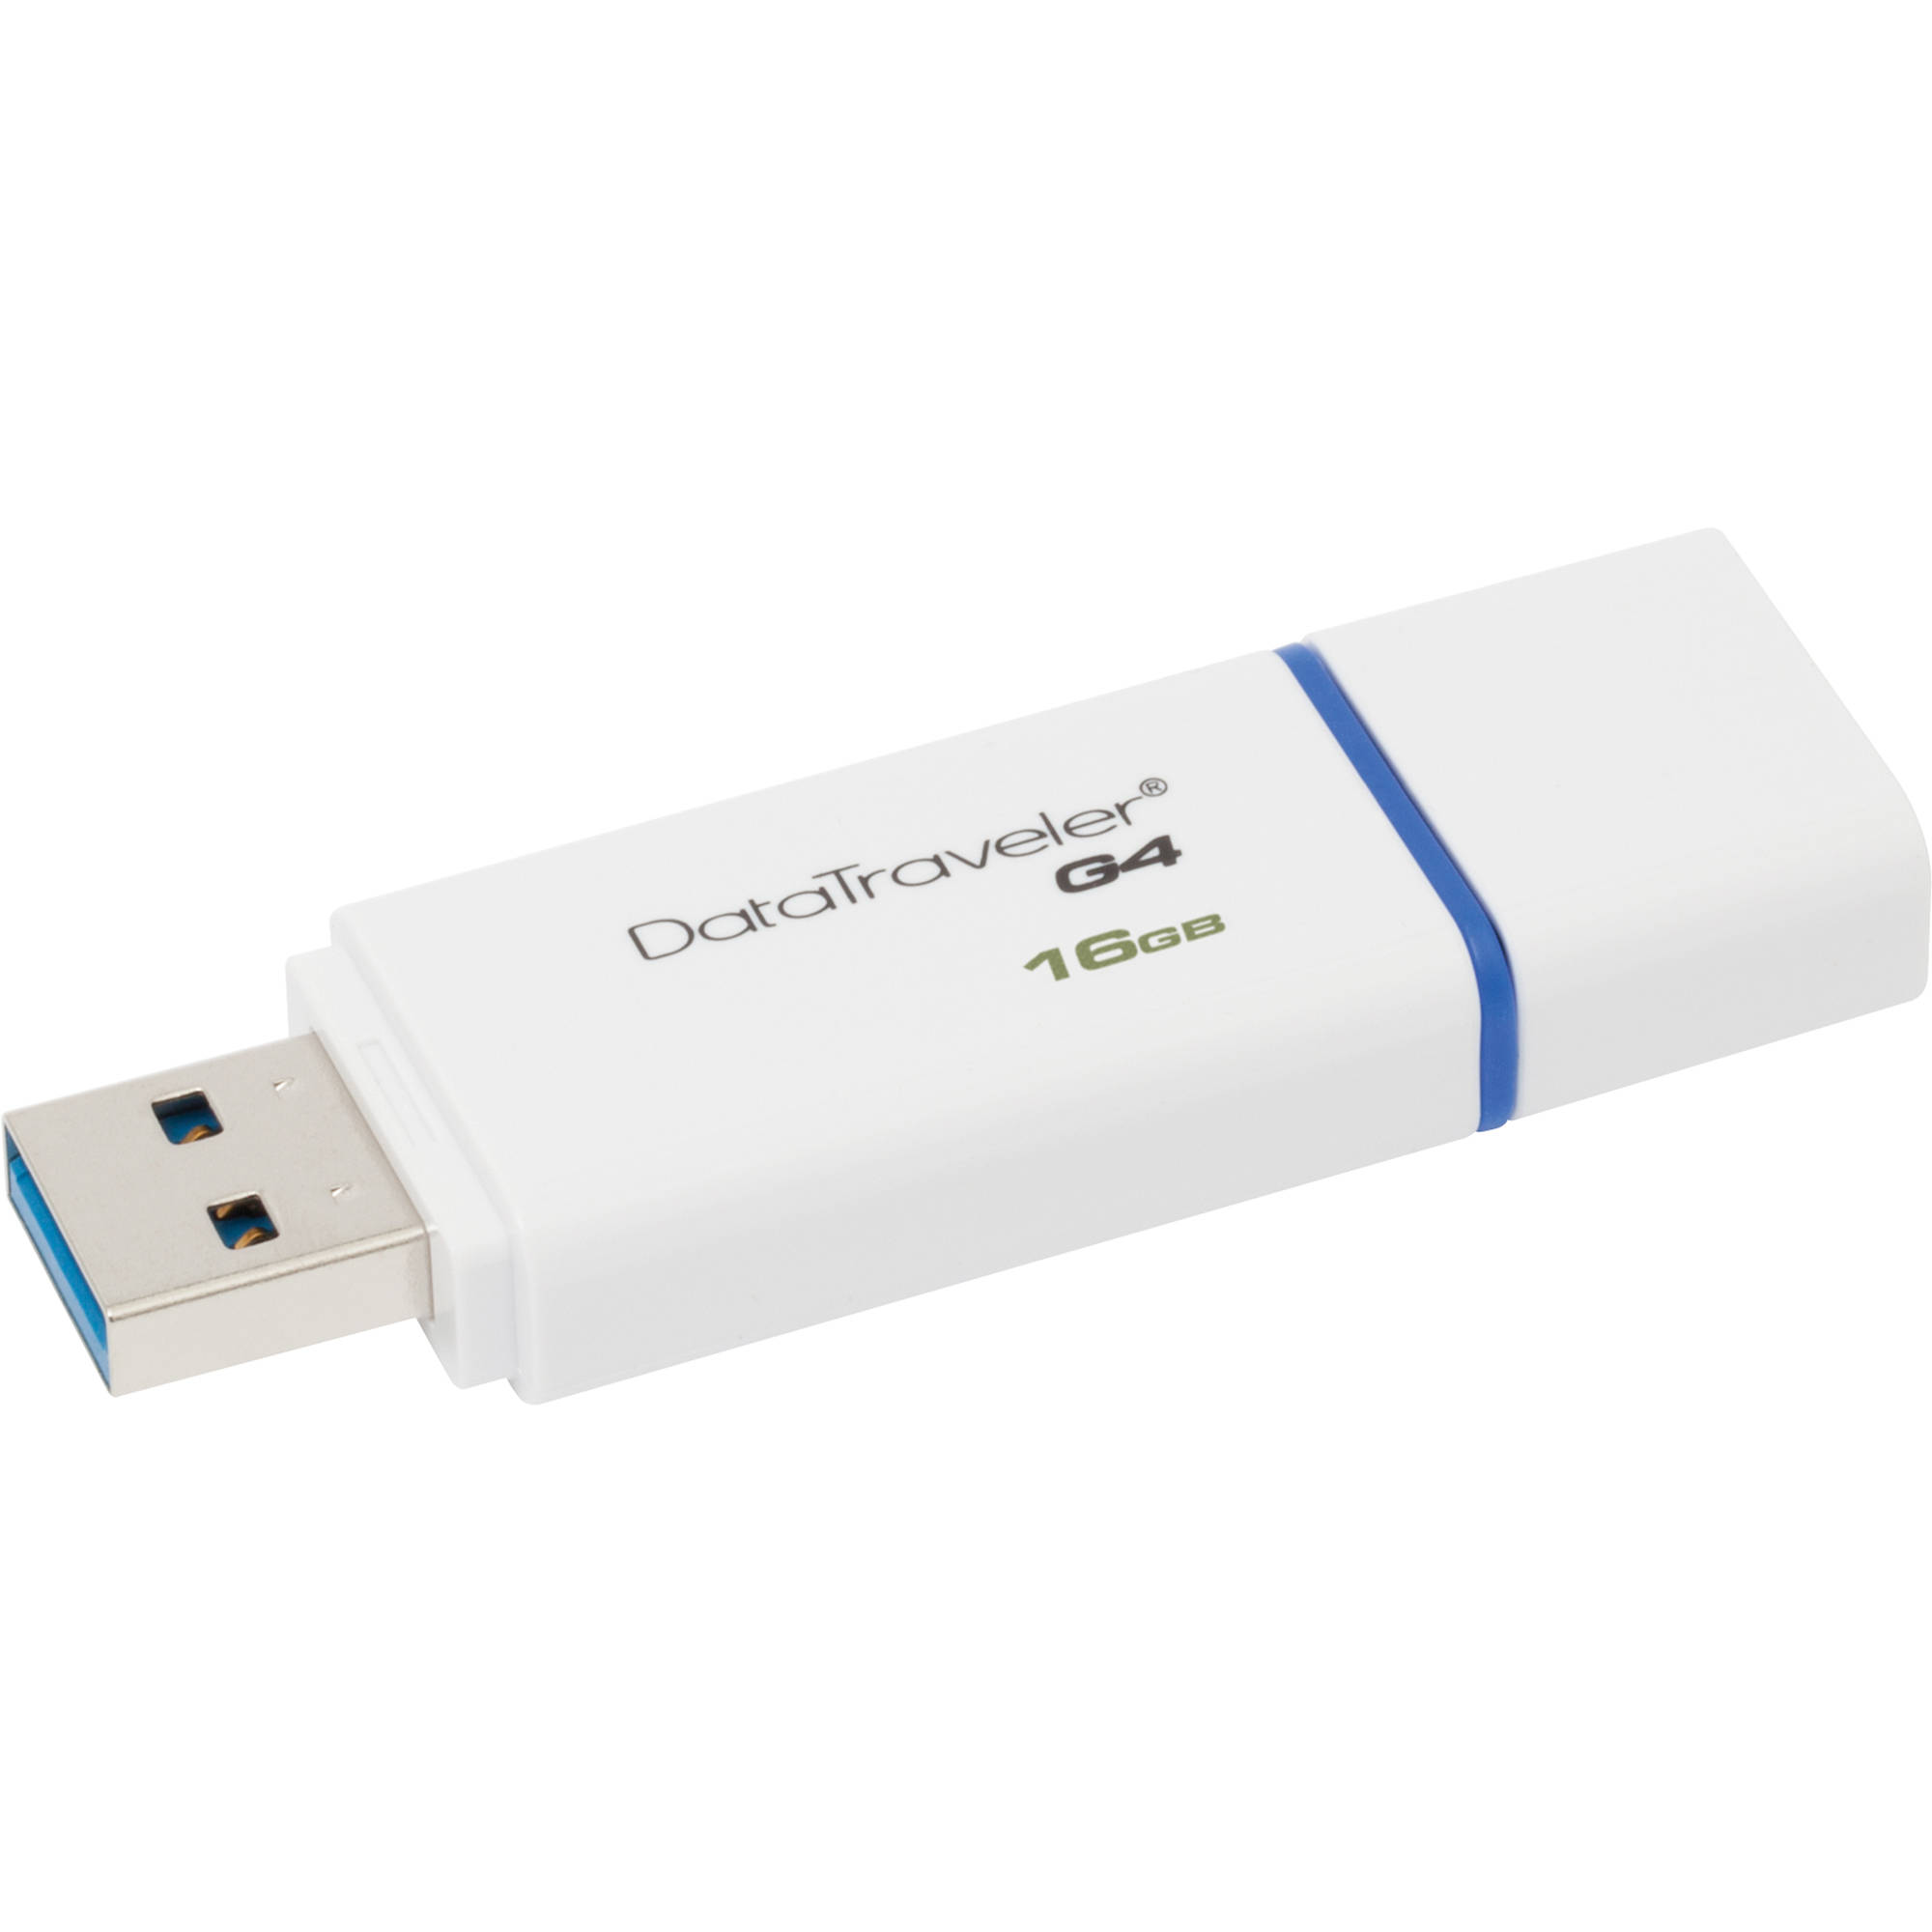 ΜΝΗΜΗ USB FLASH 16GB KINGSTON 3.0 otg